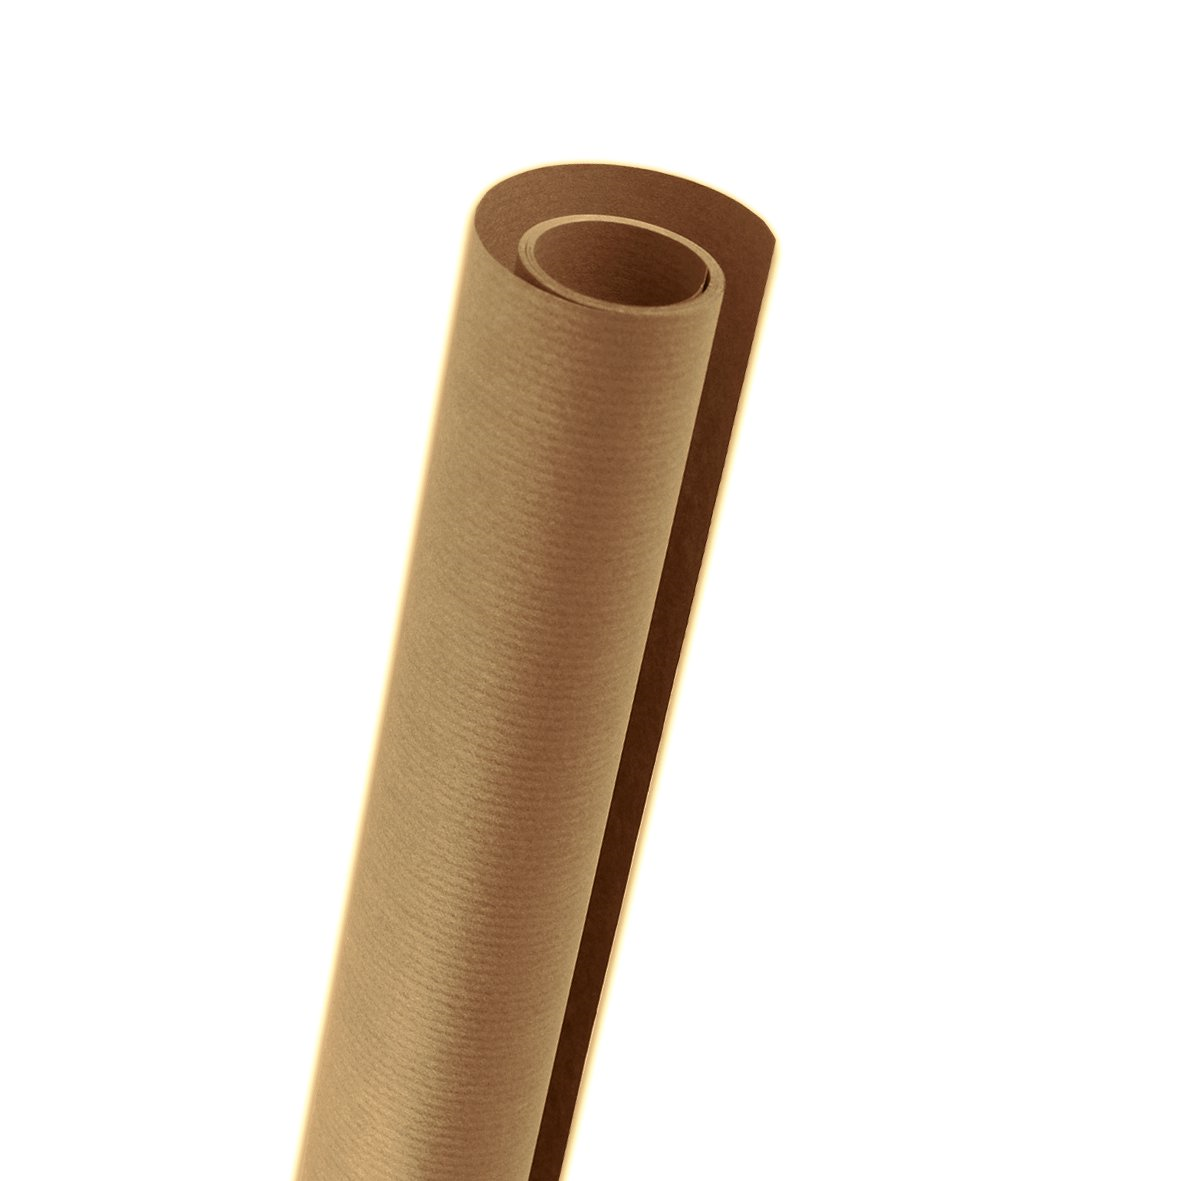 Крафтовая бумага рулон. Бумага крафт Canson в рулоне 1х10 м, 60 г/м2, коричневый. Крафт рулон. Крафт бумага в рулоне. Крафт-бумага, коричневая, в рулоне.